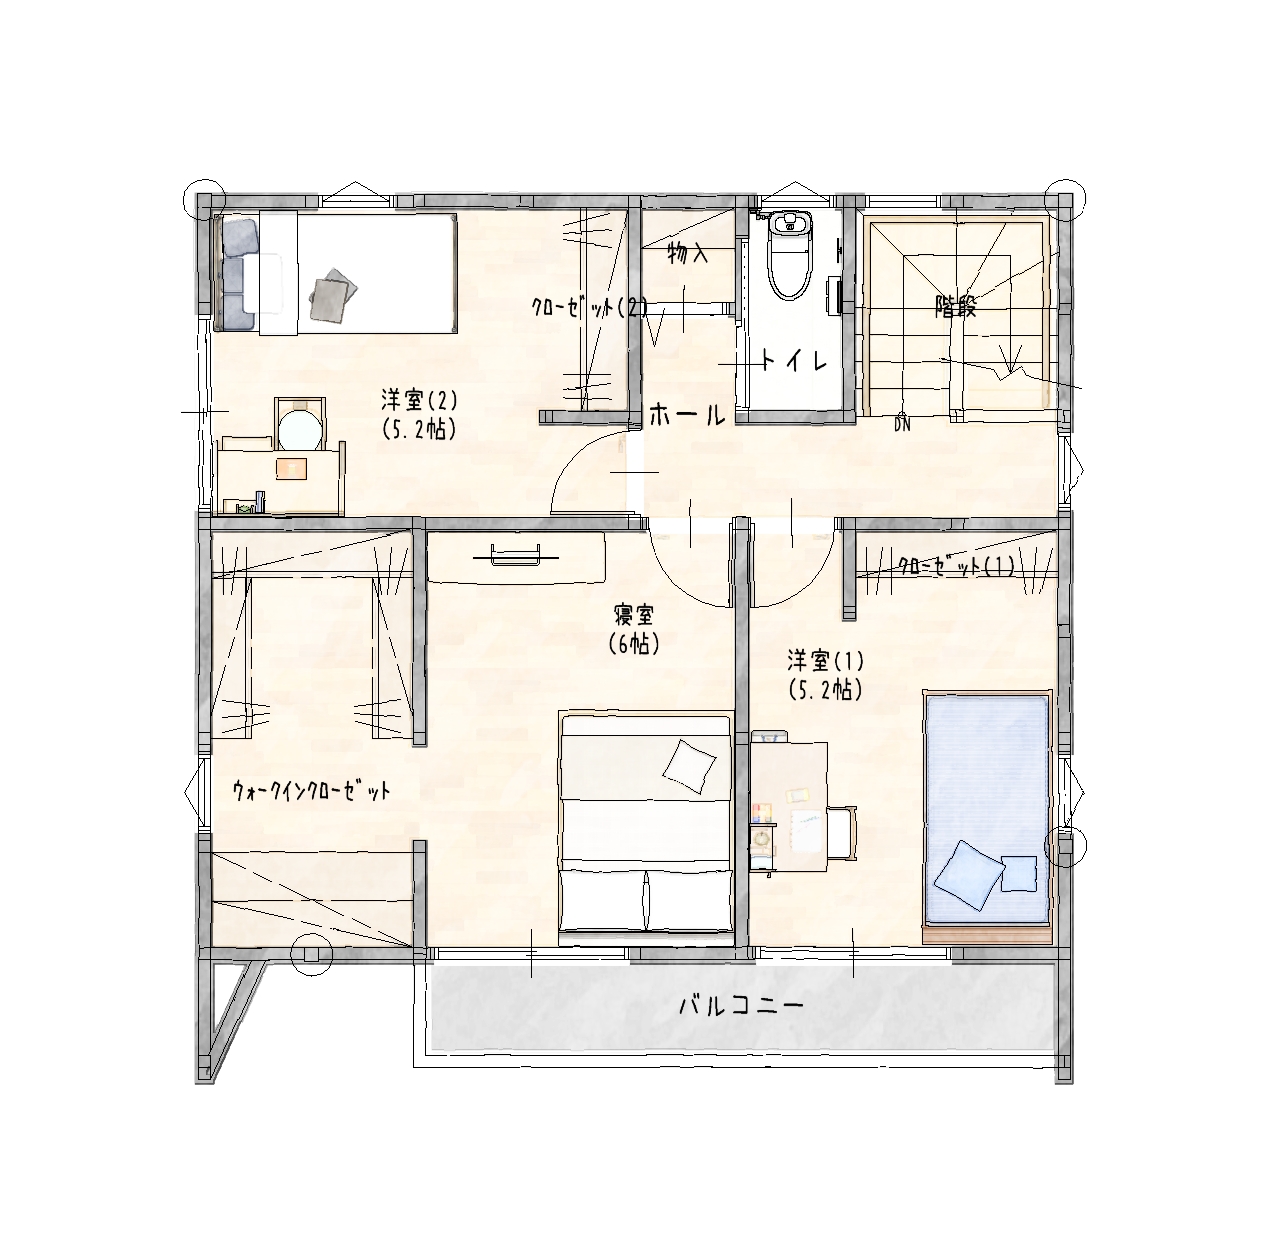 佐賀市新築建売住宅「OURS循誘2号地」2階平面図